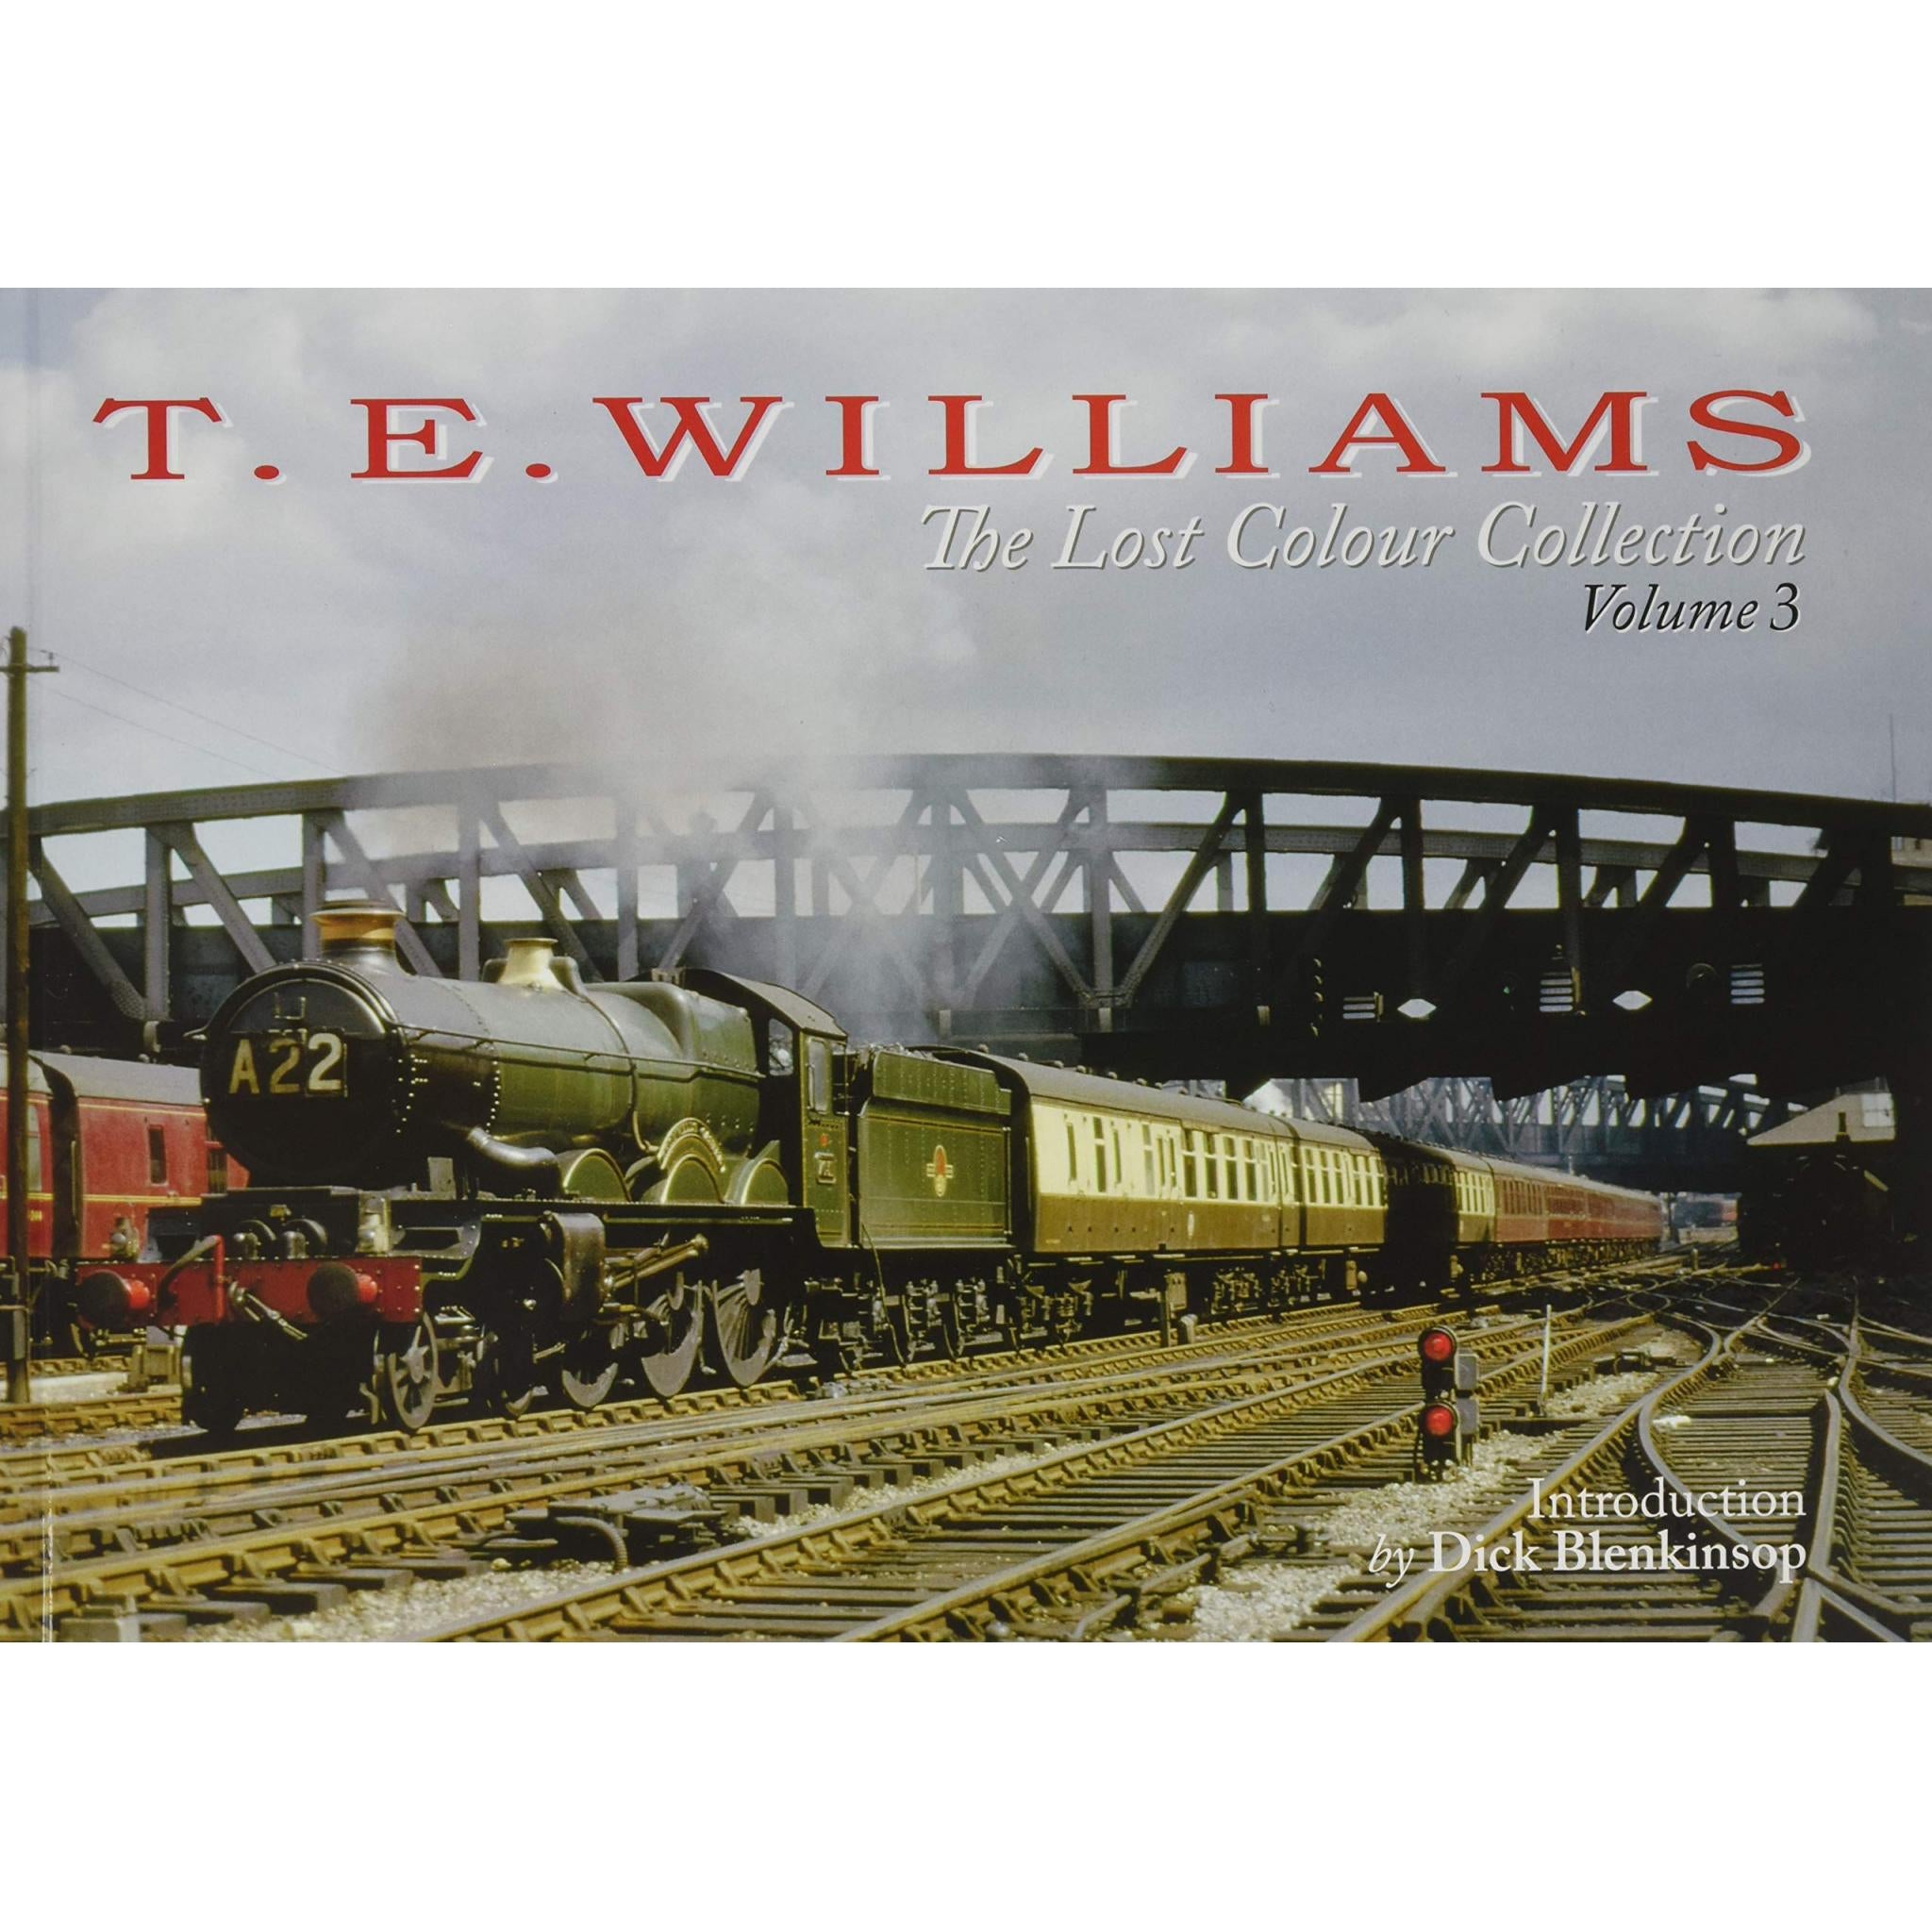 T. E. WILLIAMS: The Lost Colour Collection Vol. 3